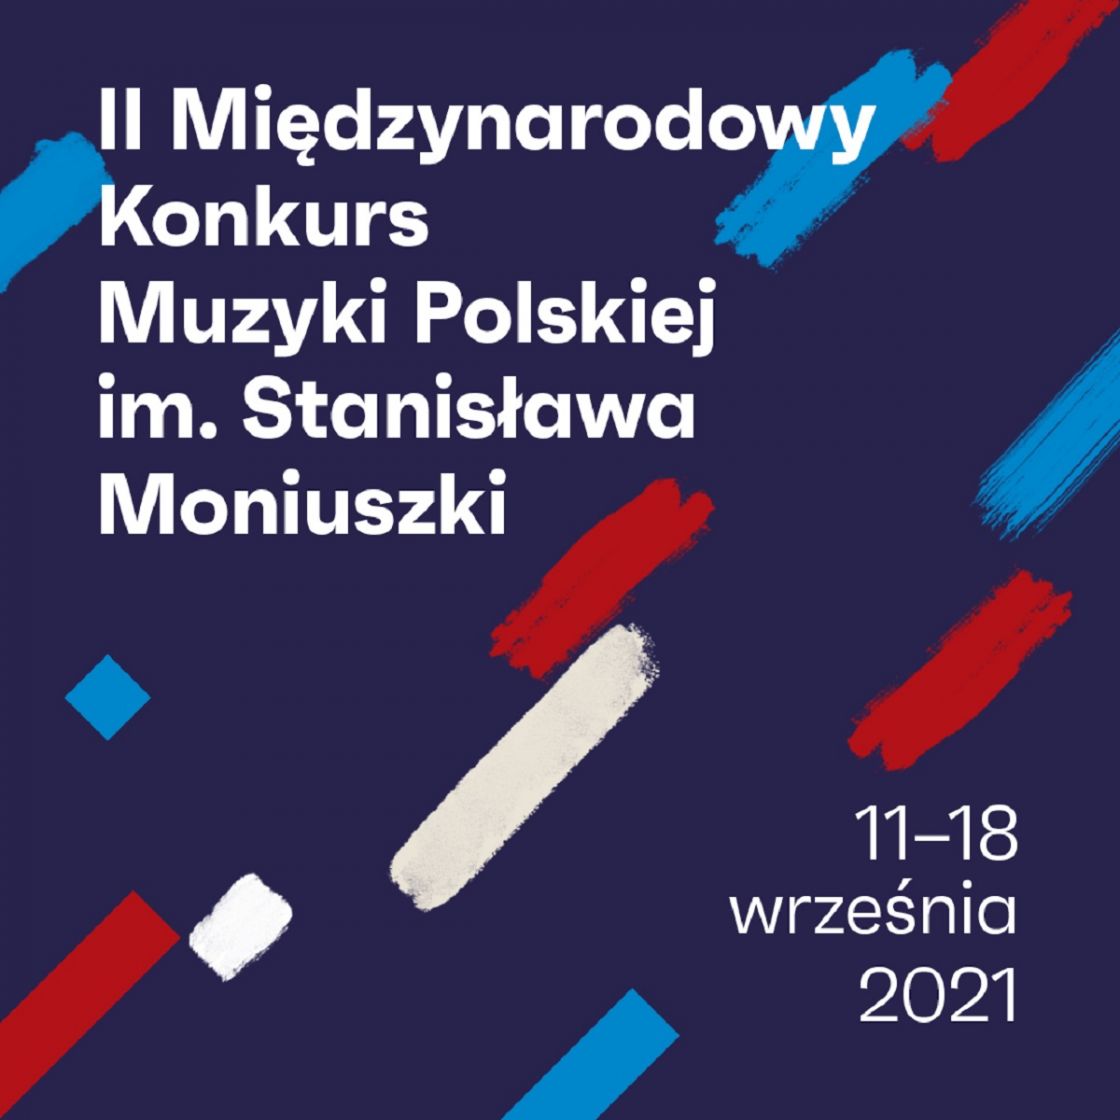 Znamy datę 2. Międzynarodowego Konkursu Muzyki Polskiej im. Stanisława Moniuszki